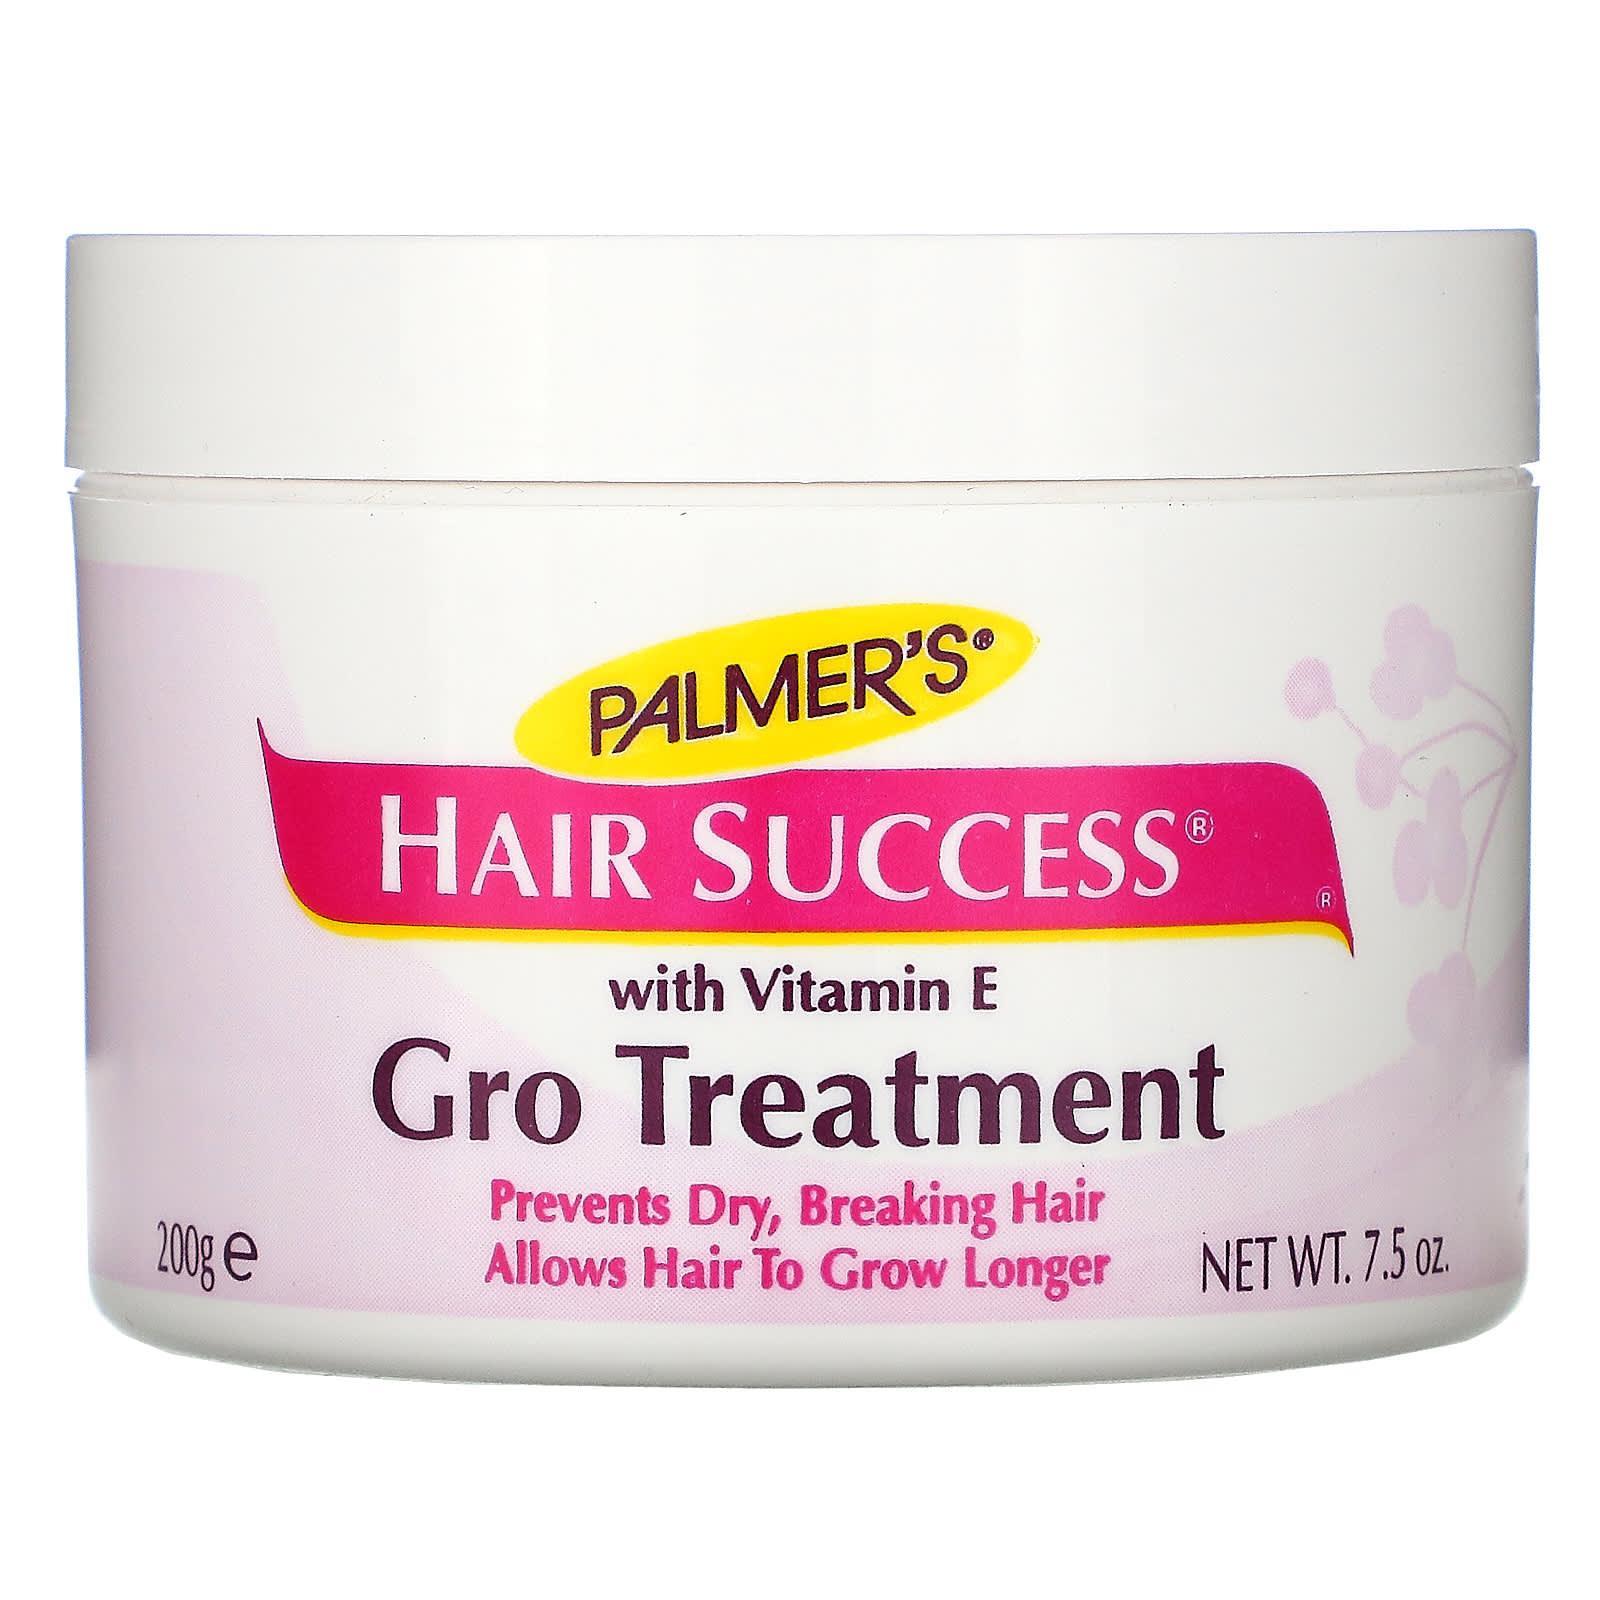 Palmers, Hair Success, Gro Treatment, with Vitamin E, 7.5 oz (200 g)